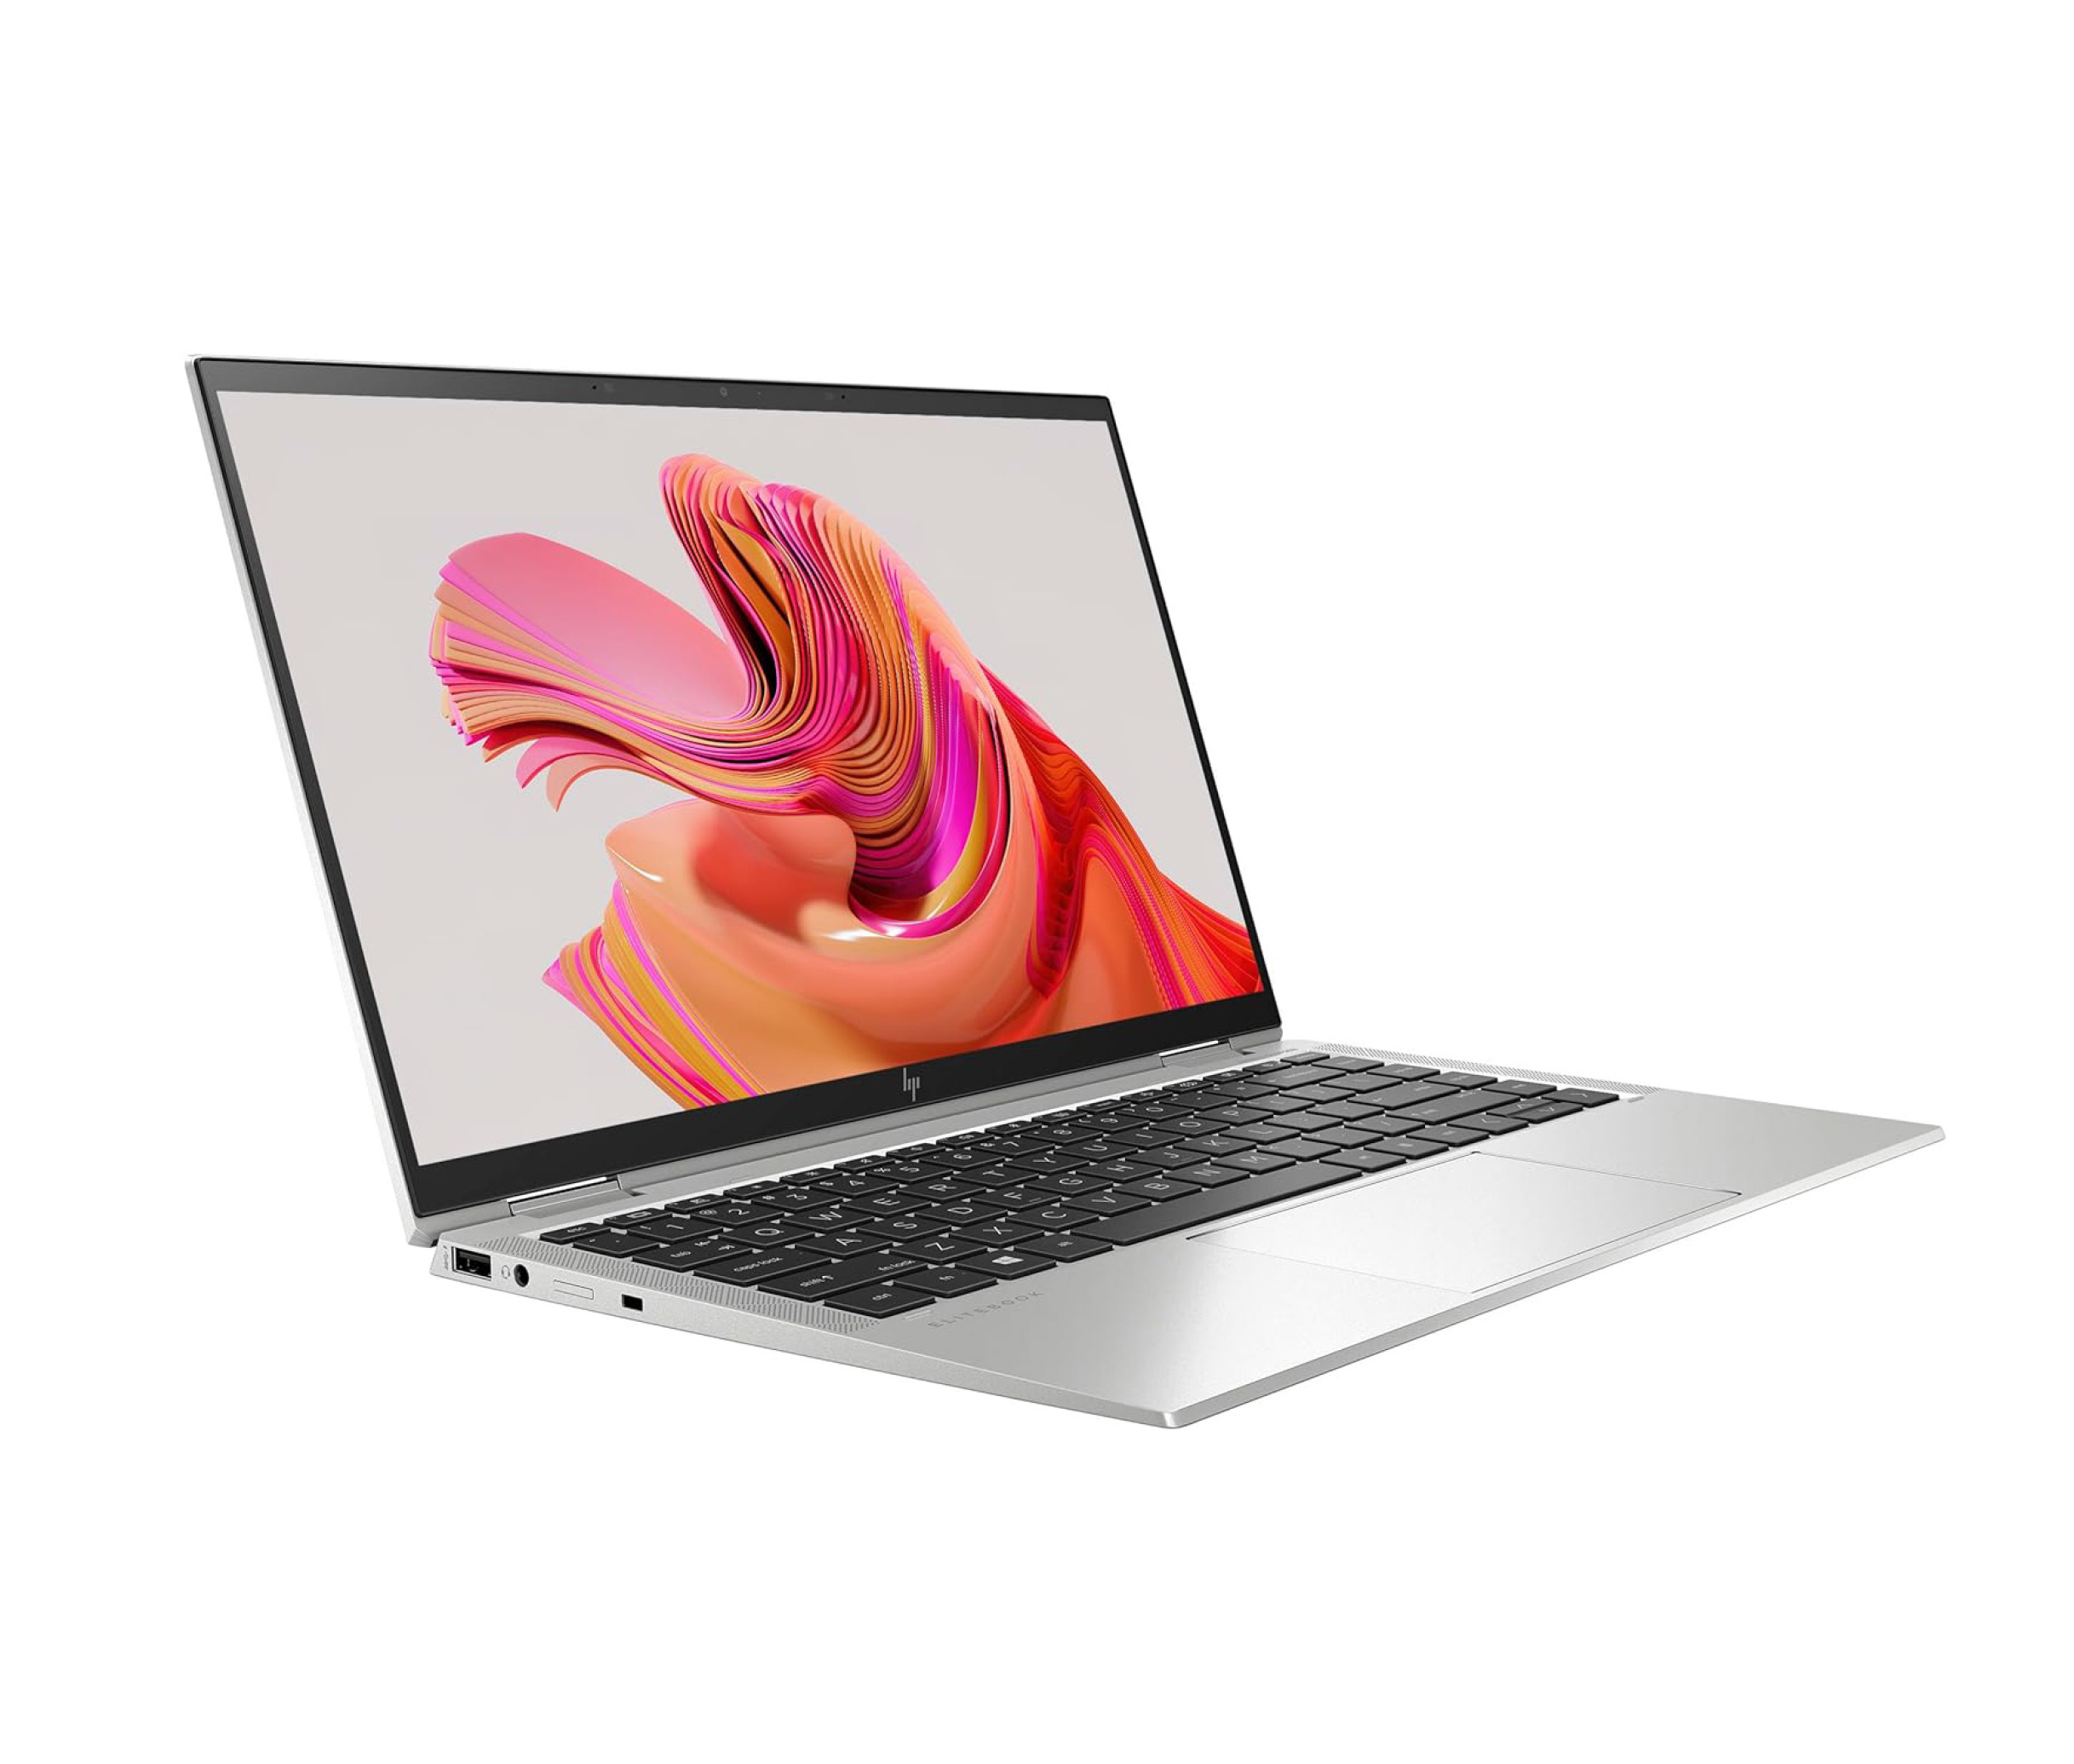  لپ تاپ HP EliteBook x360 1040 G7 | لاکچری لپ تاپ 